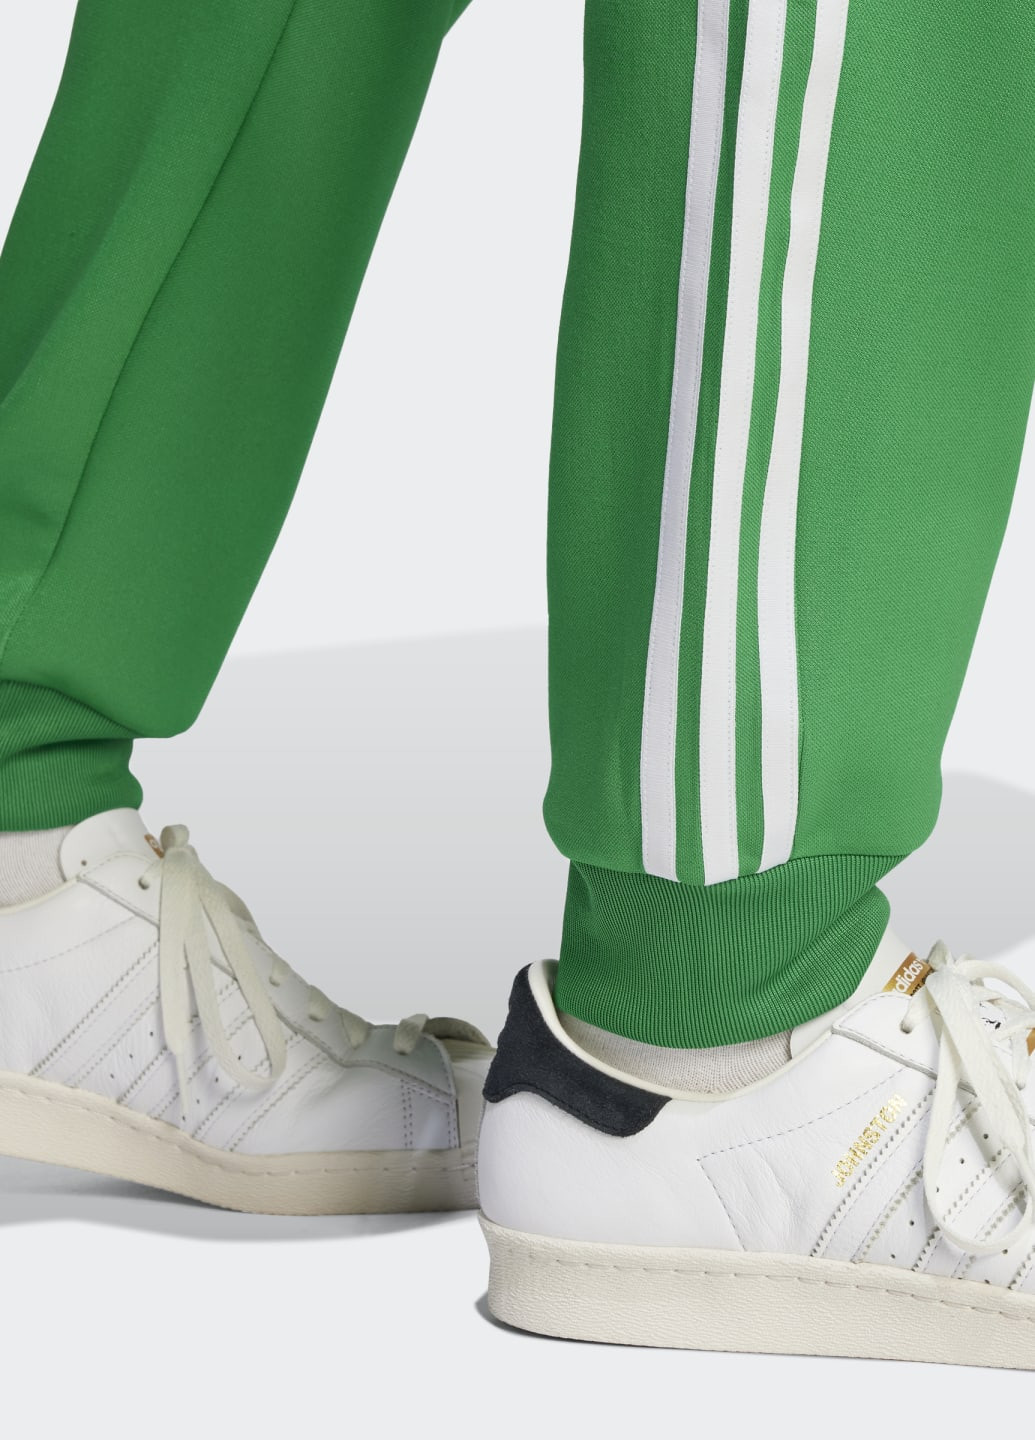 Зеленые спортивные демисезонные брюки adidas